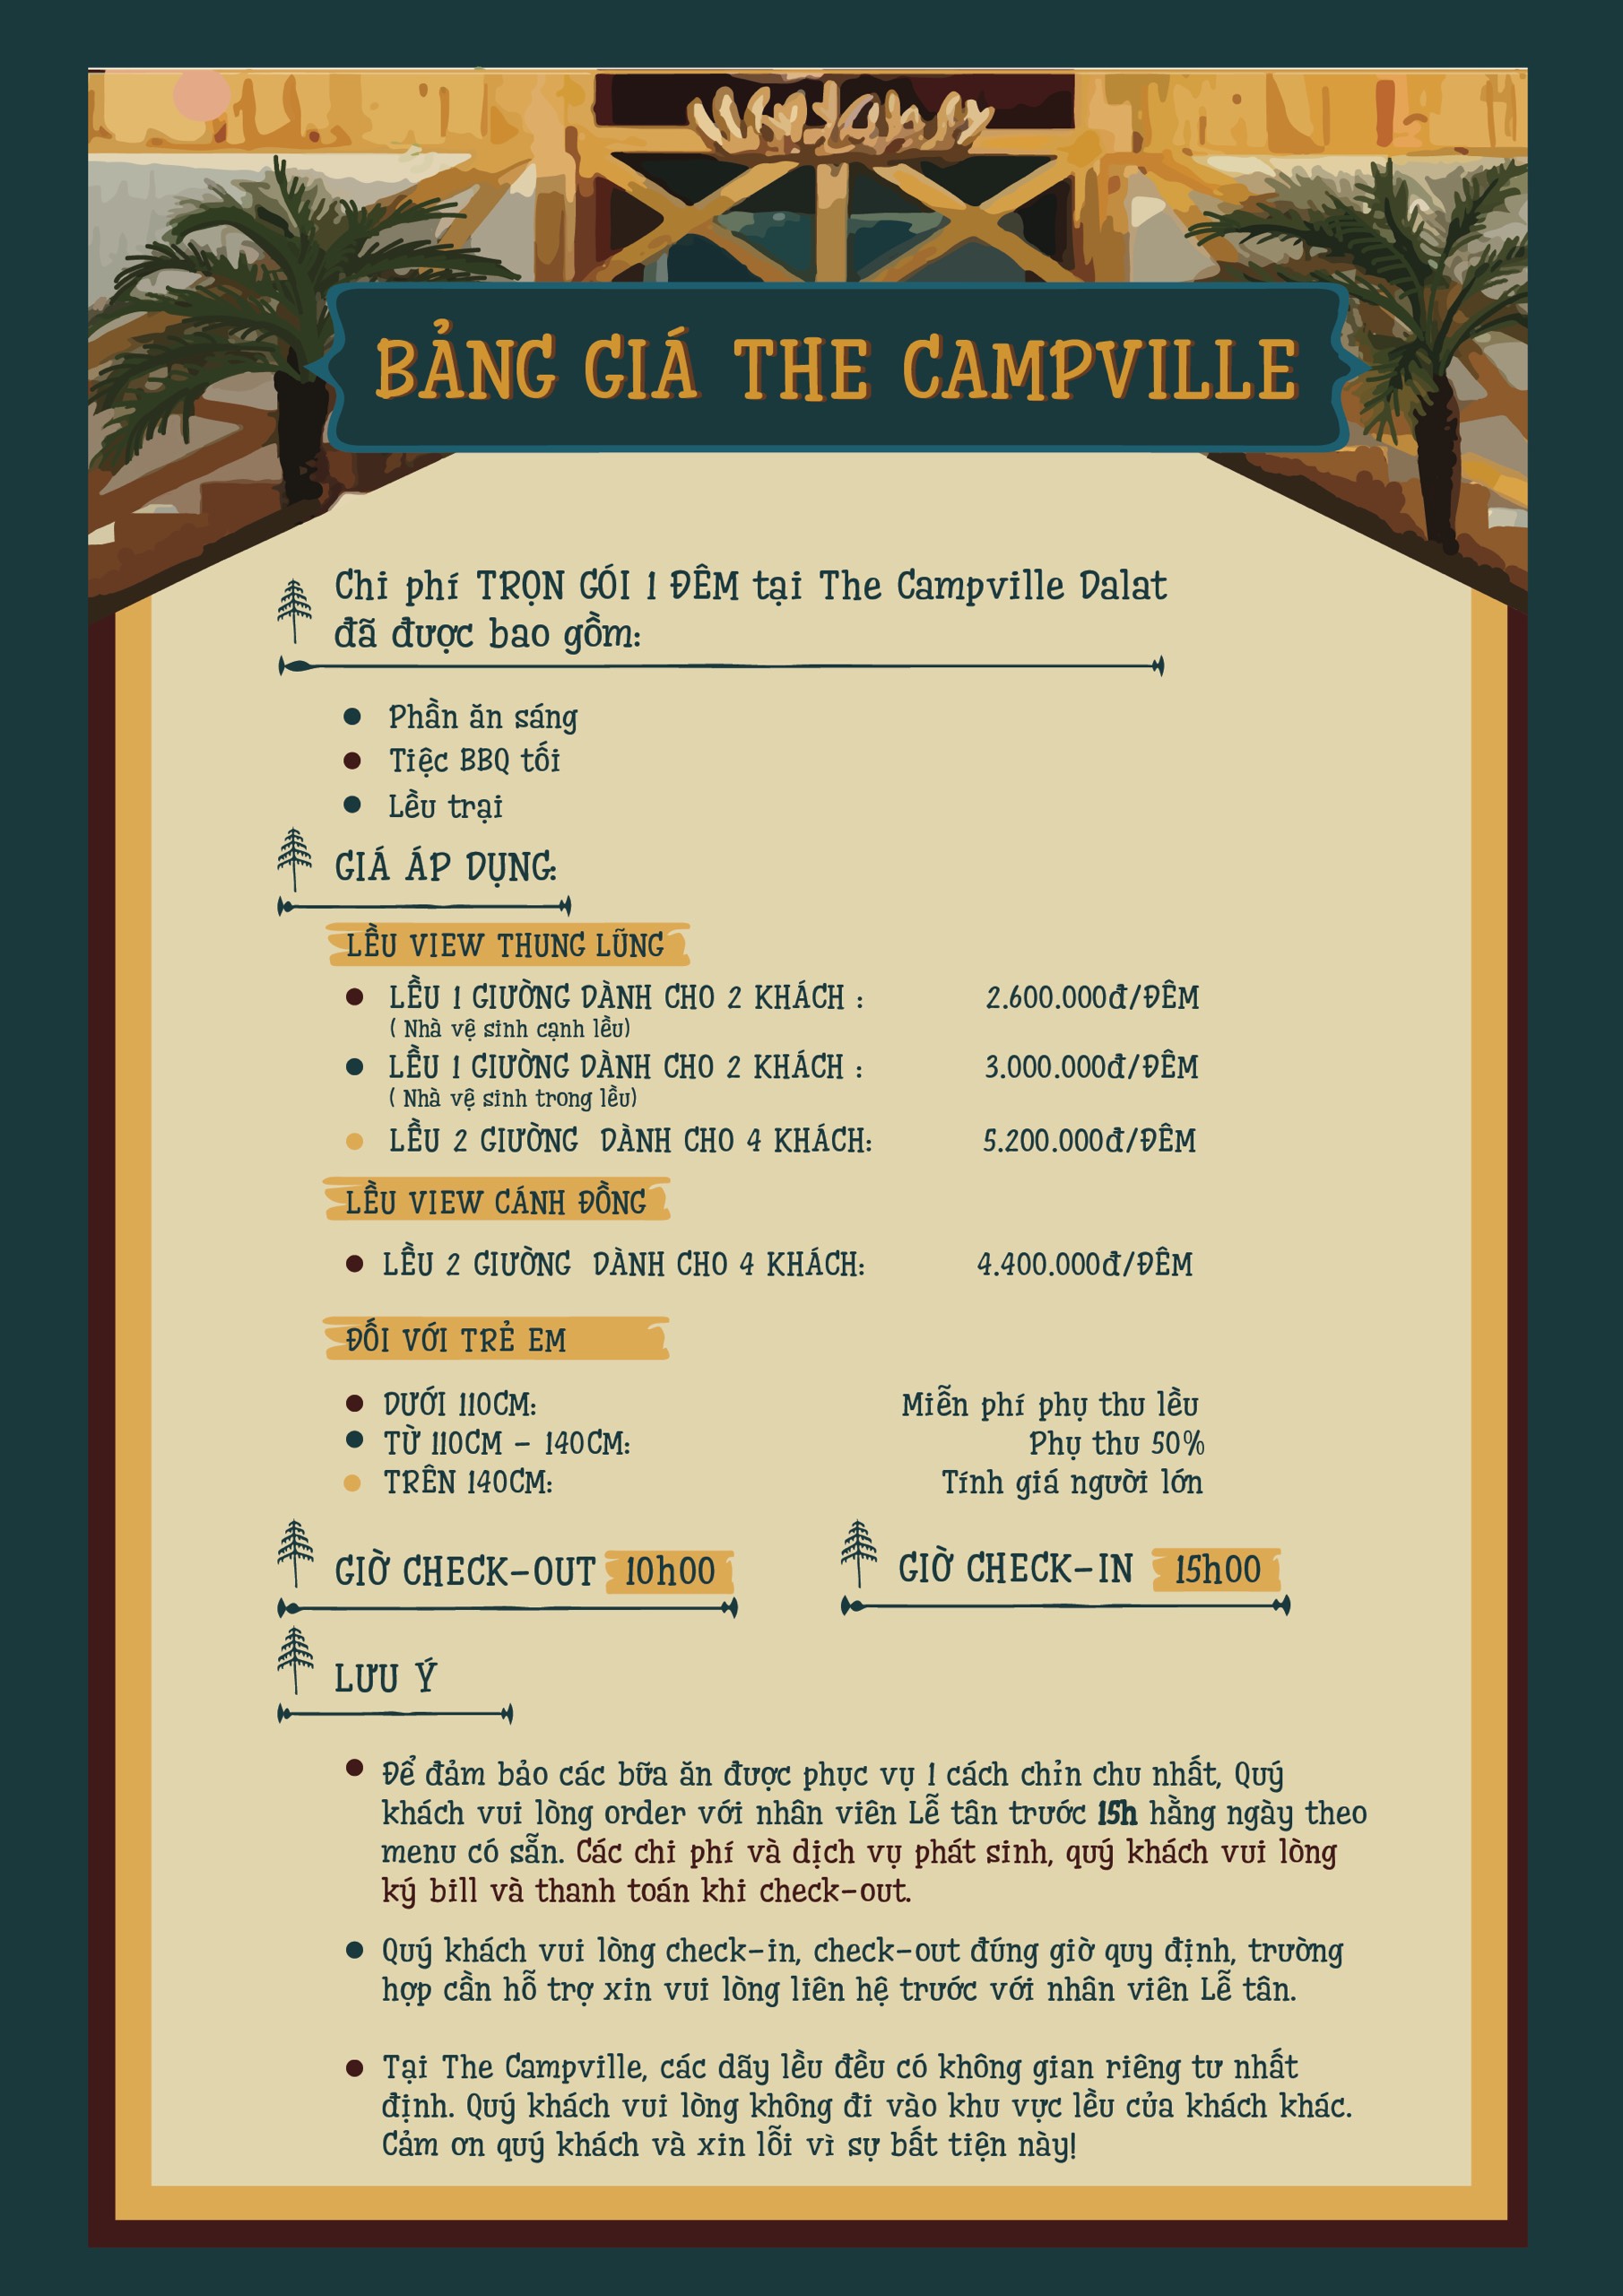 bảng giá the campville dalat